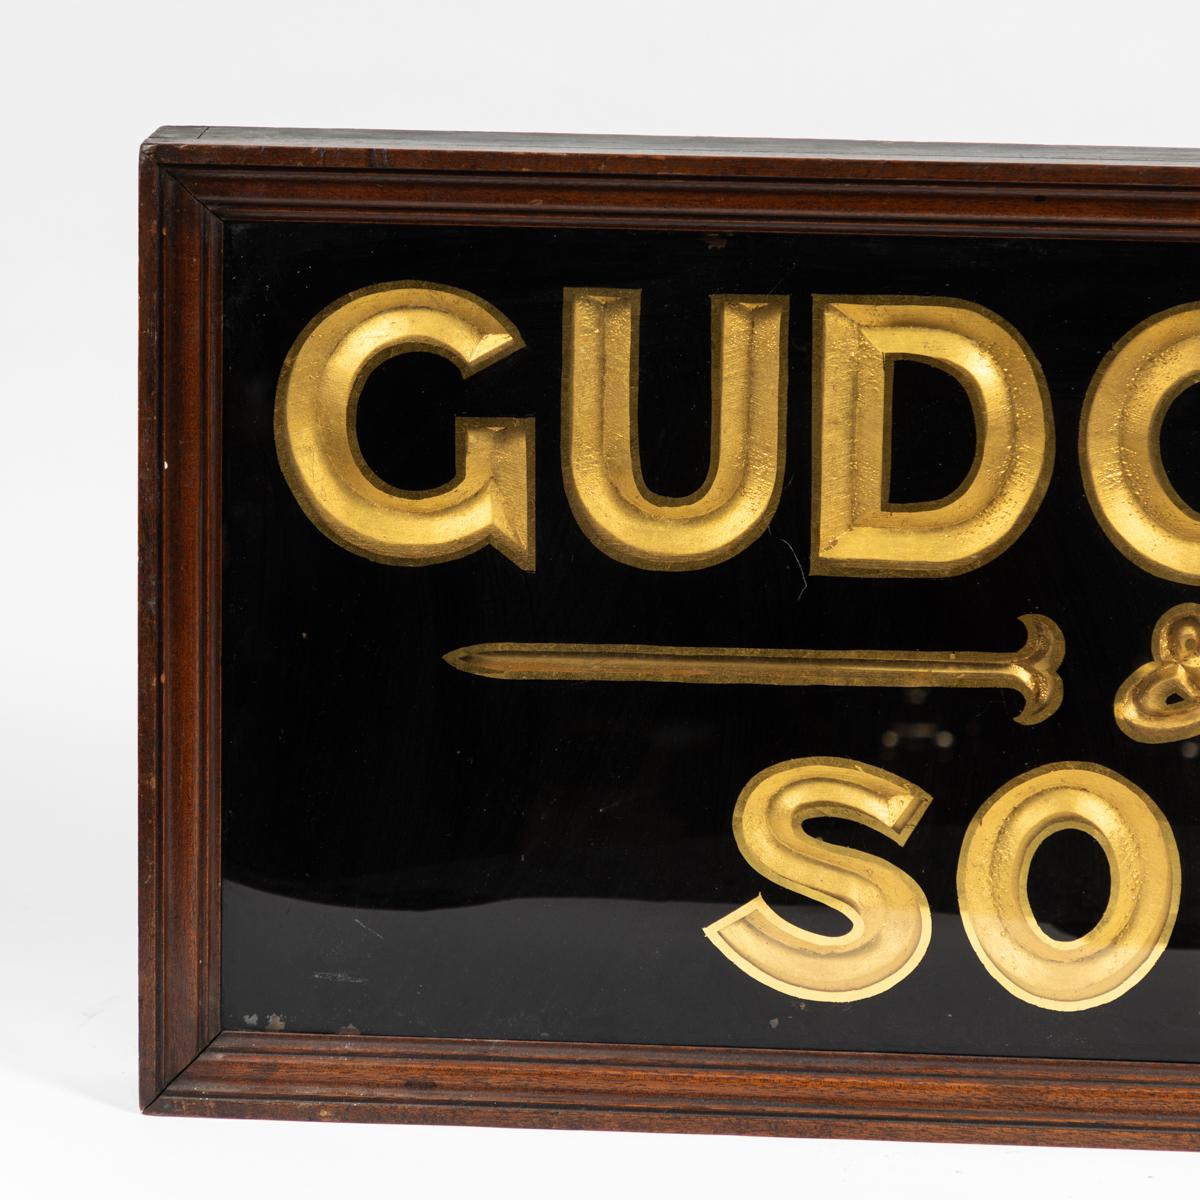 19th-century English gilded and ebonized wood sign advertising 